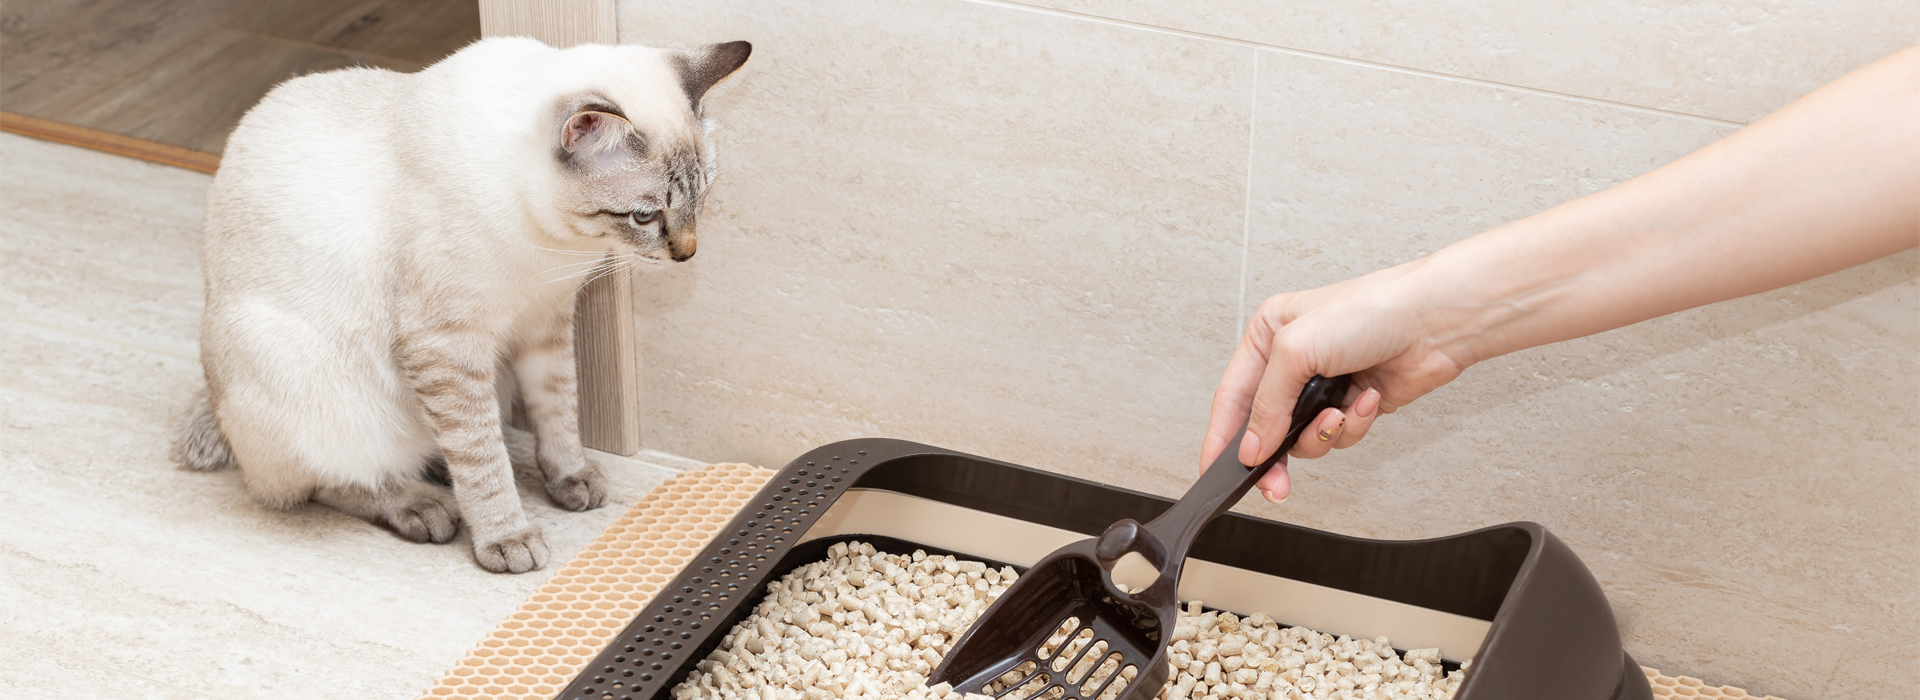 Cómo hacer que un gato rescatado use la arenera?